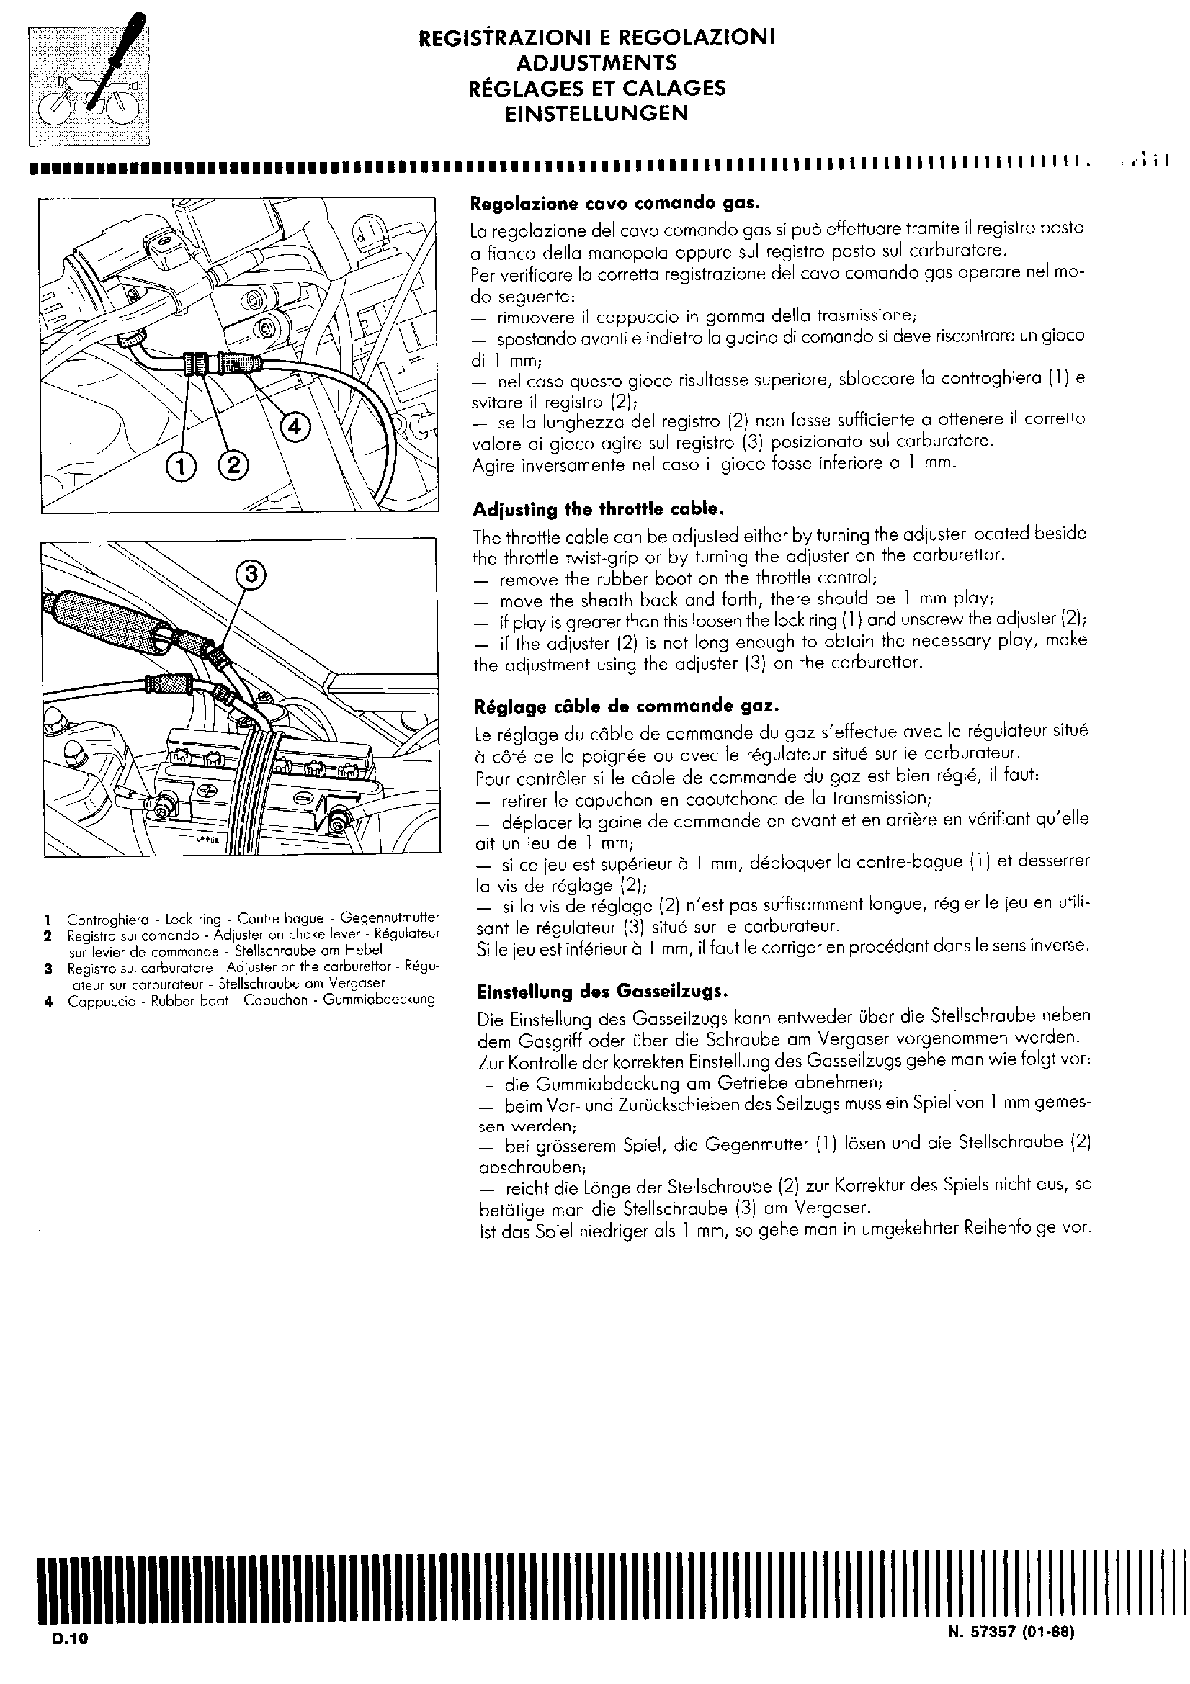 1987-1988 Cagiva Freccia C10R 125 Service Manual